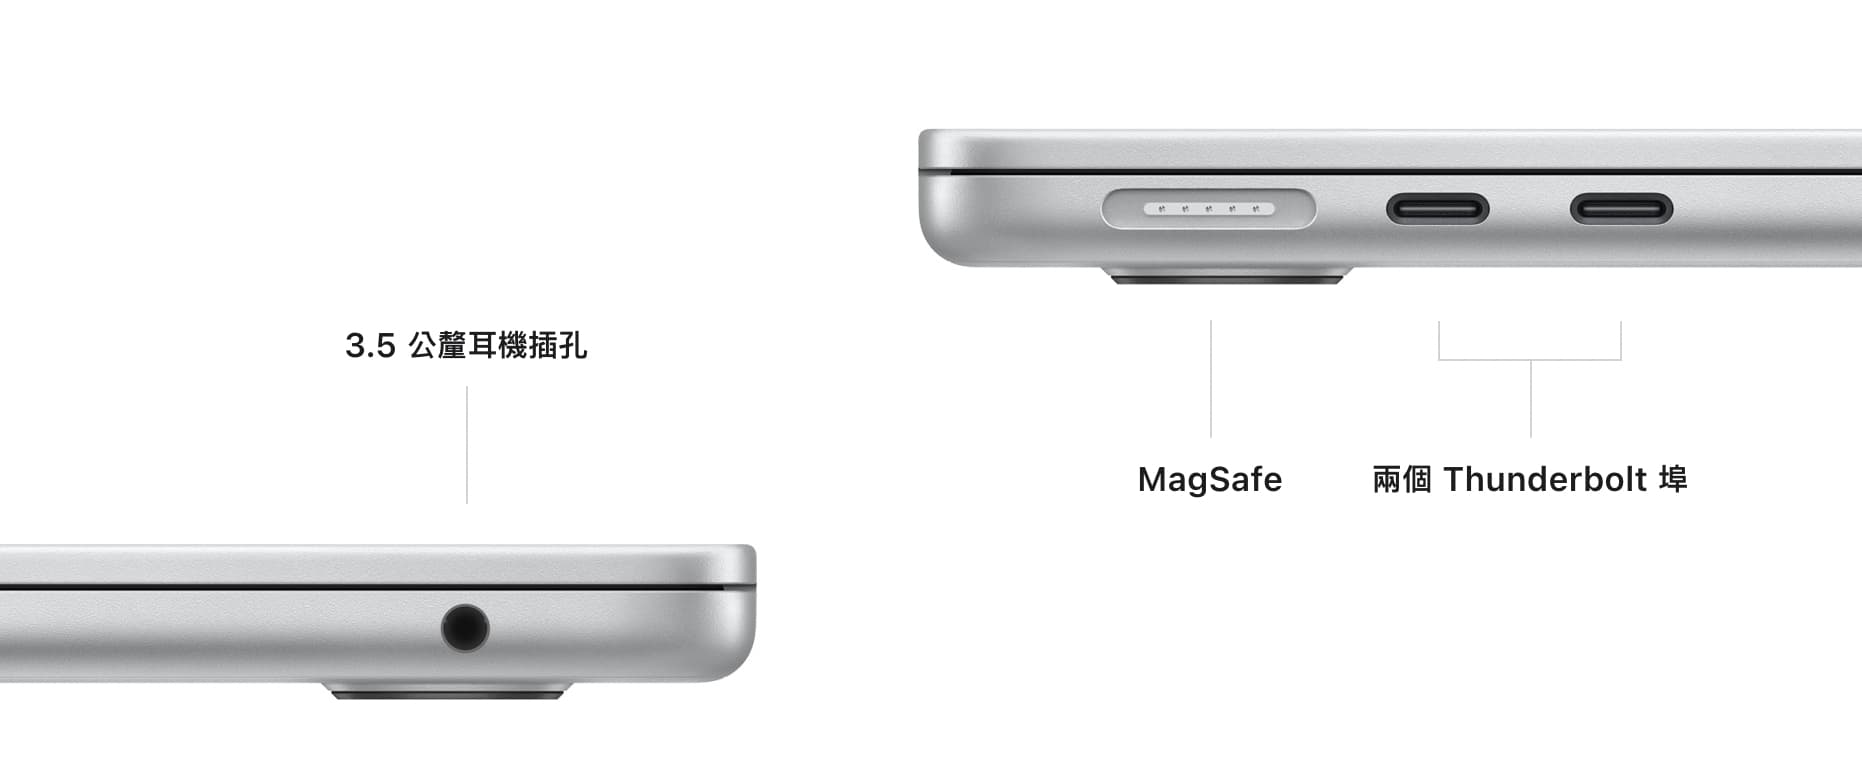 M2 MacBook Air 充電孔與接孔